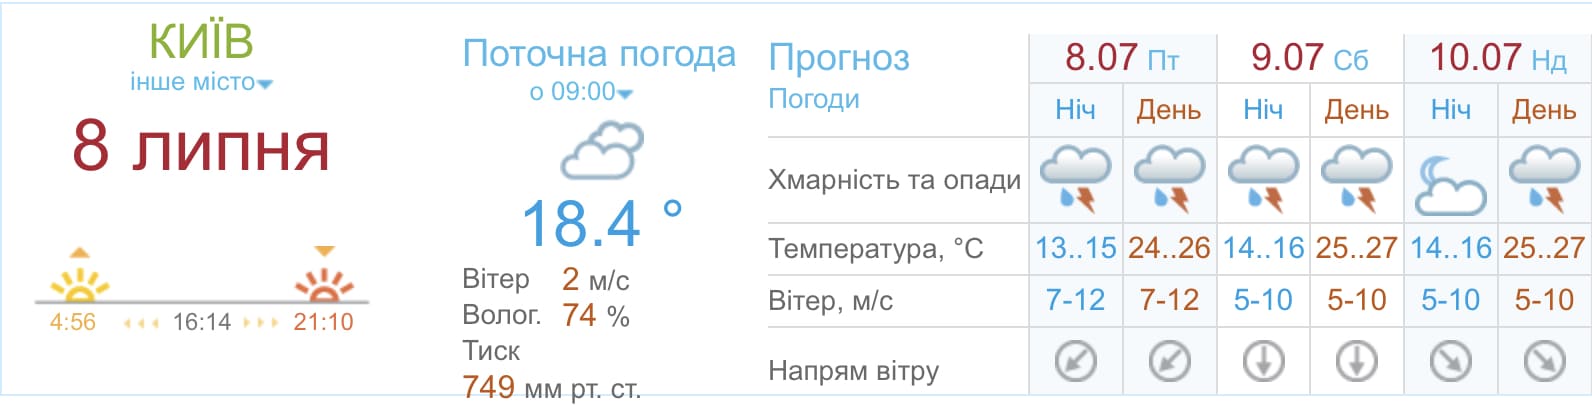 Погода в Киеве на выходных 9 и 10 июля, meteo.gov.ua